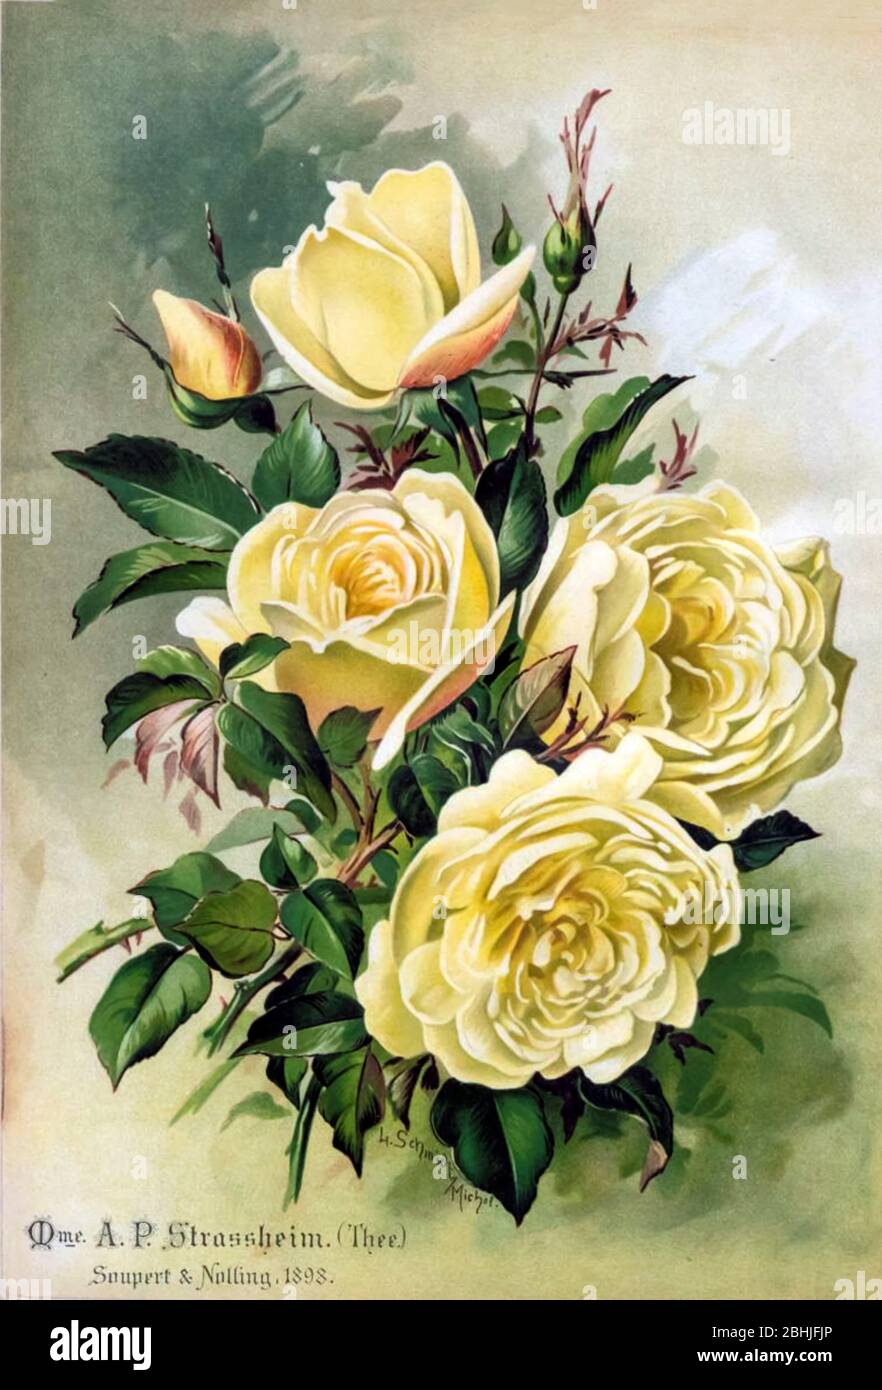 Rose (Thé) jaune d'or - yellow rose Rosen